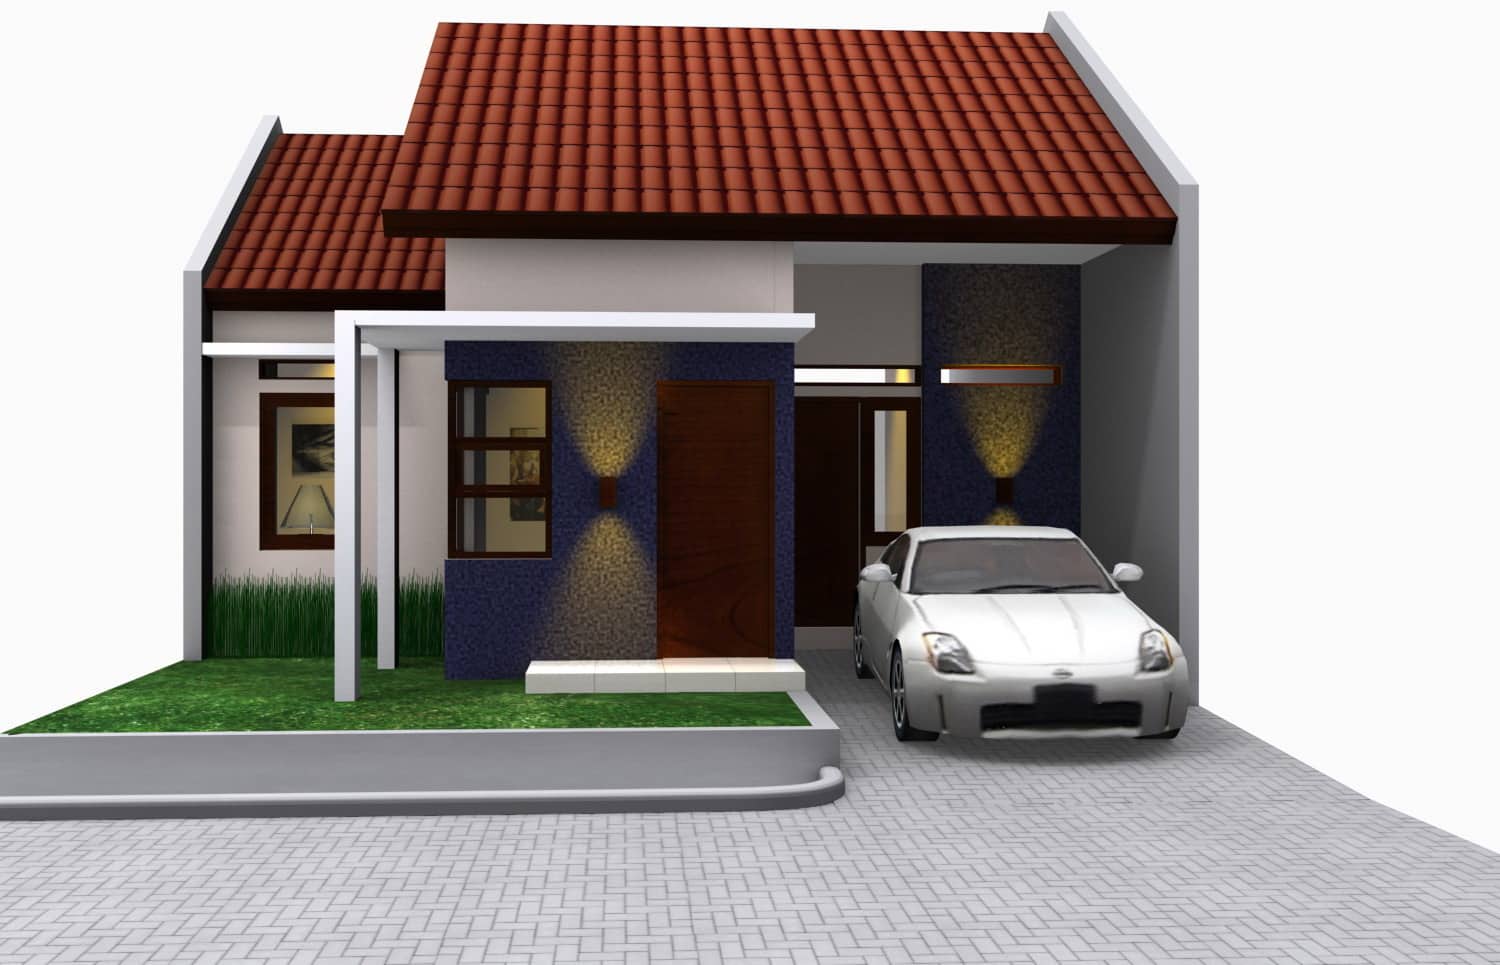 Contoh desain rumah dengan garasi terbuka - Thegorbalsla